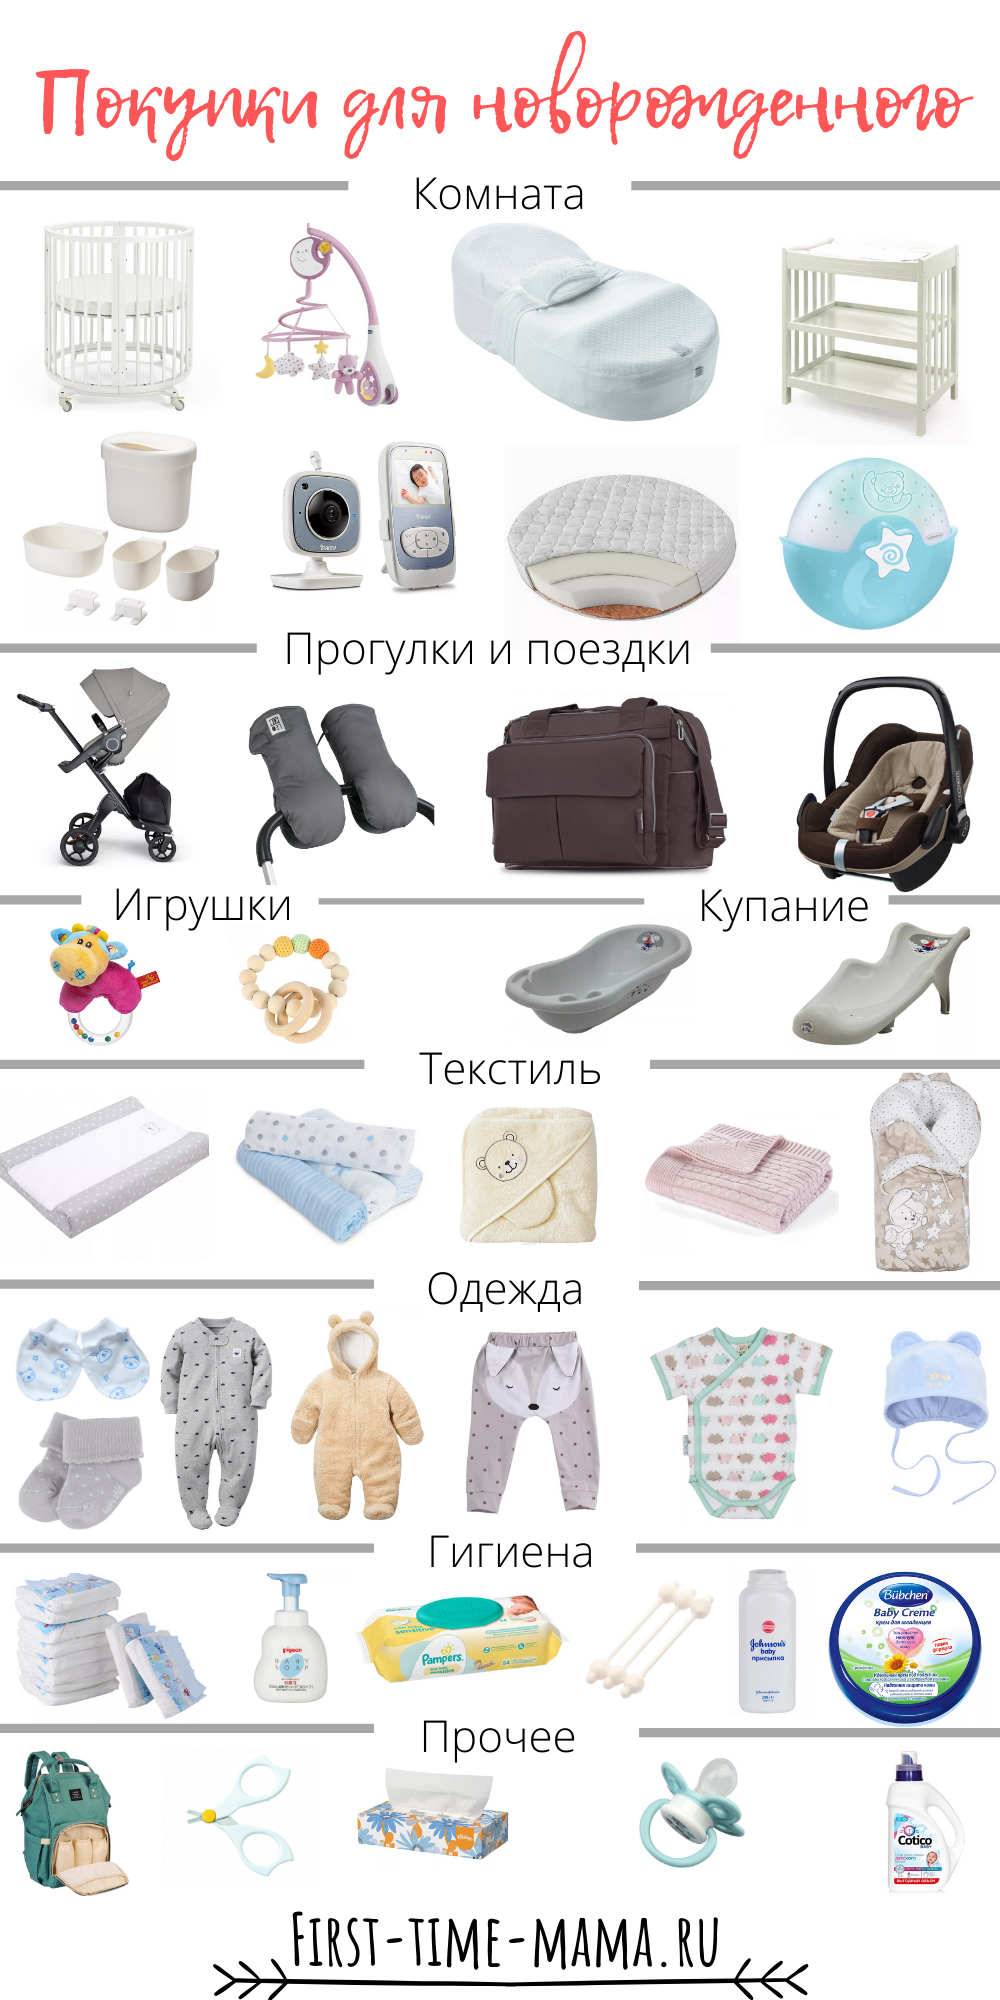 Что нужно малышу после. Вещи первой необходимости для новорожденного после роддома. Одежда для новорожденного список необходимого. Список вещей для новорожденного. Список однждыдля новорожденного.